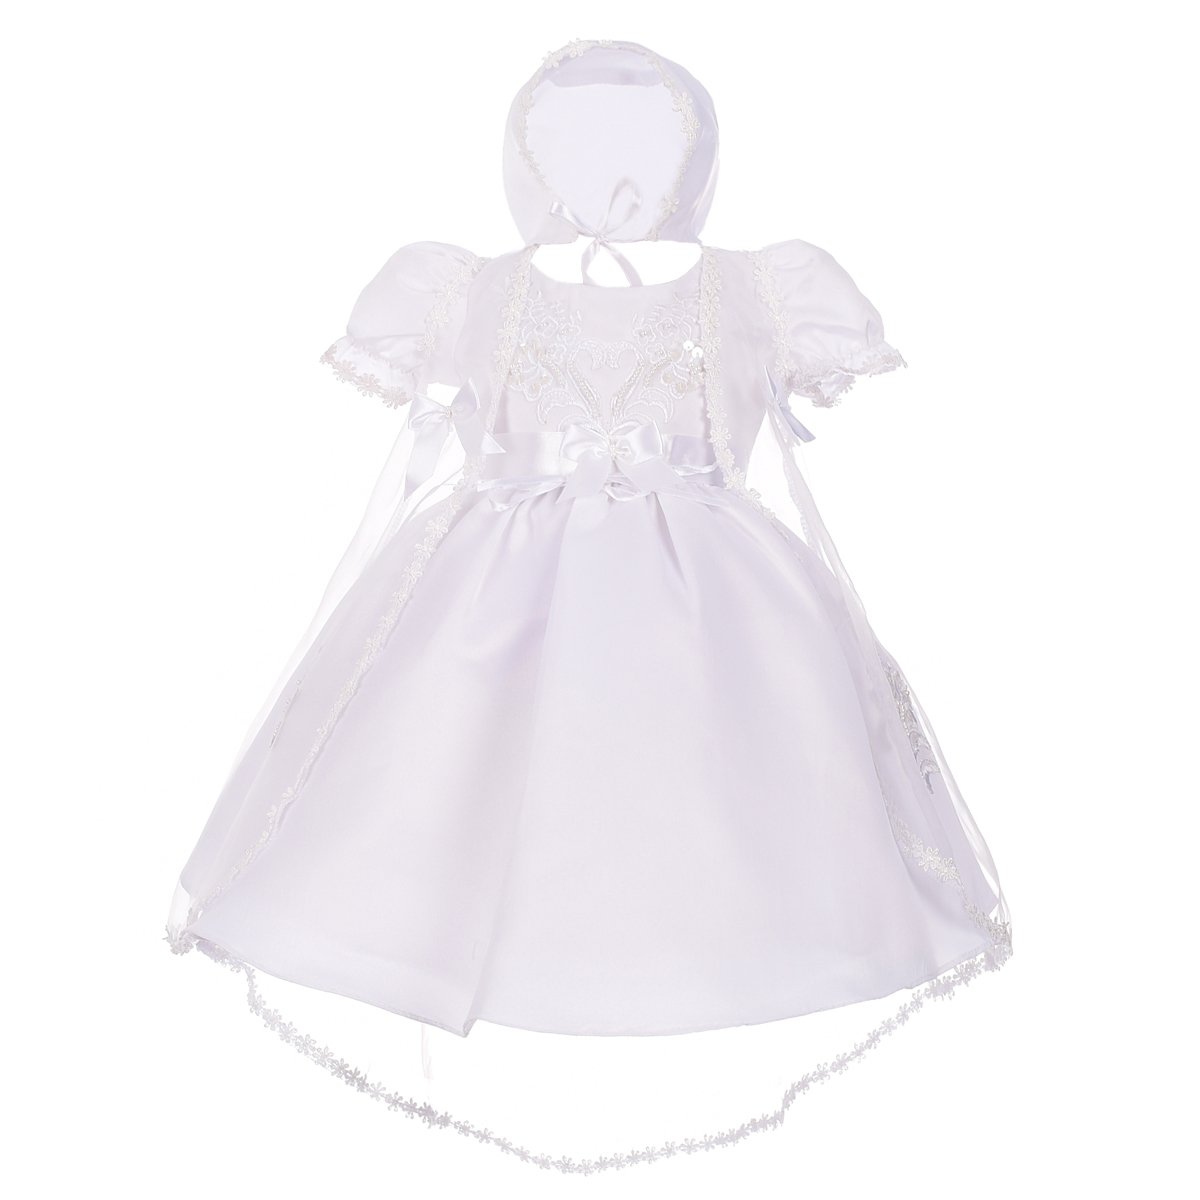 Lito Angels Taufkleid für Baby Mädchen, Satin Weiß Taufe Kleid mit Spitze Umhang Cape und Taufhaube, Größe 6-9 Monate 74